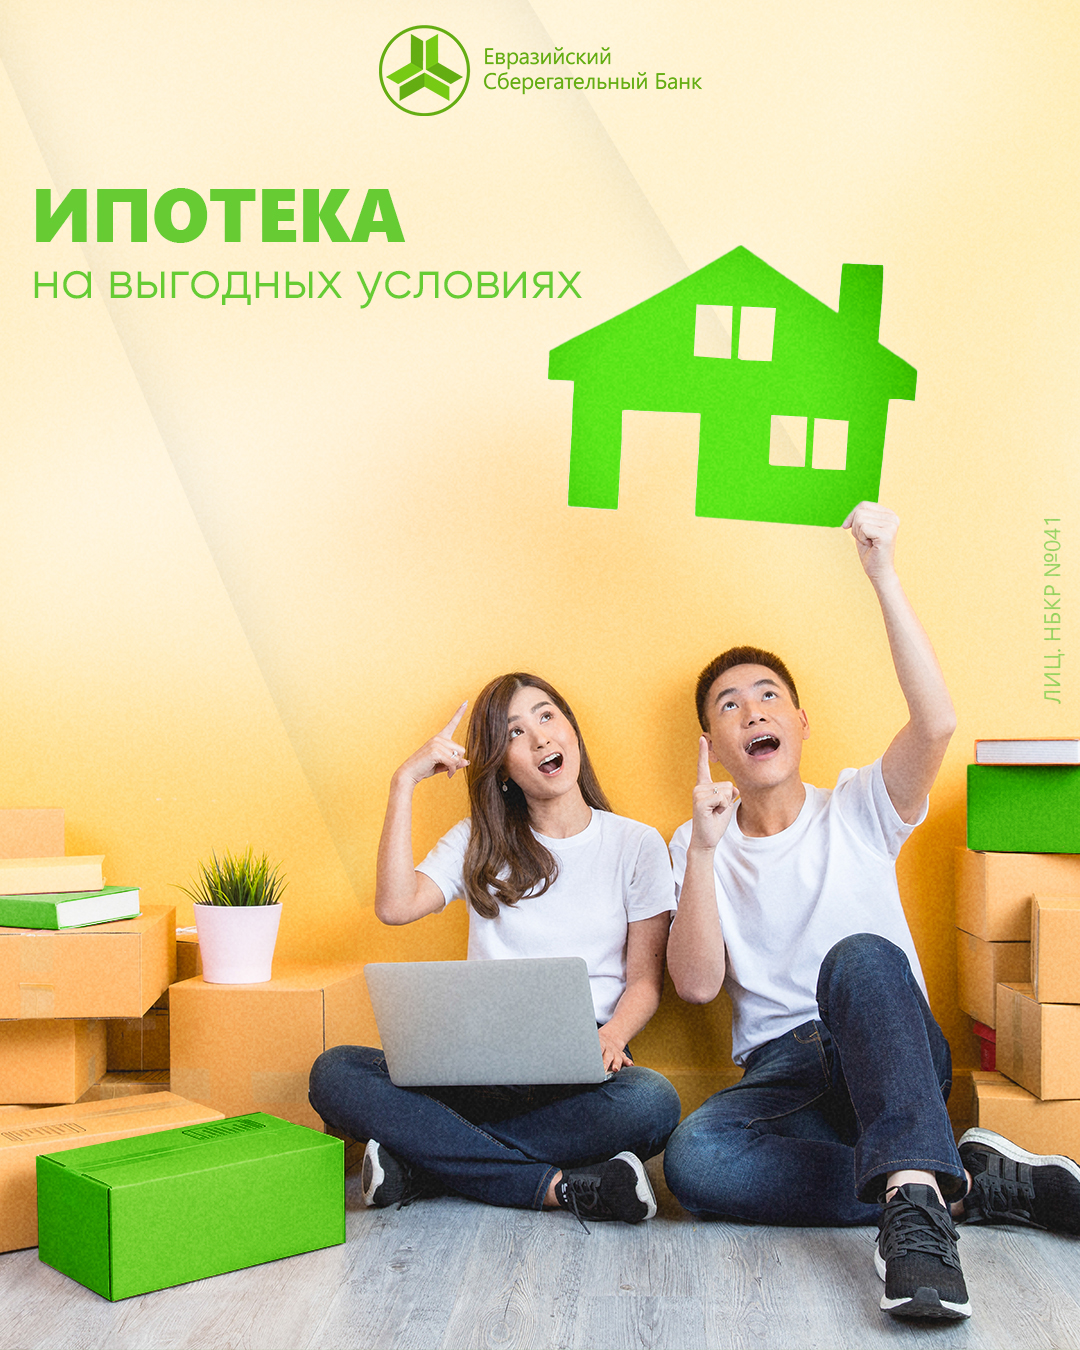 Приобретай собственное жилье вместе с Евразийским Сберегательном Банком